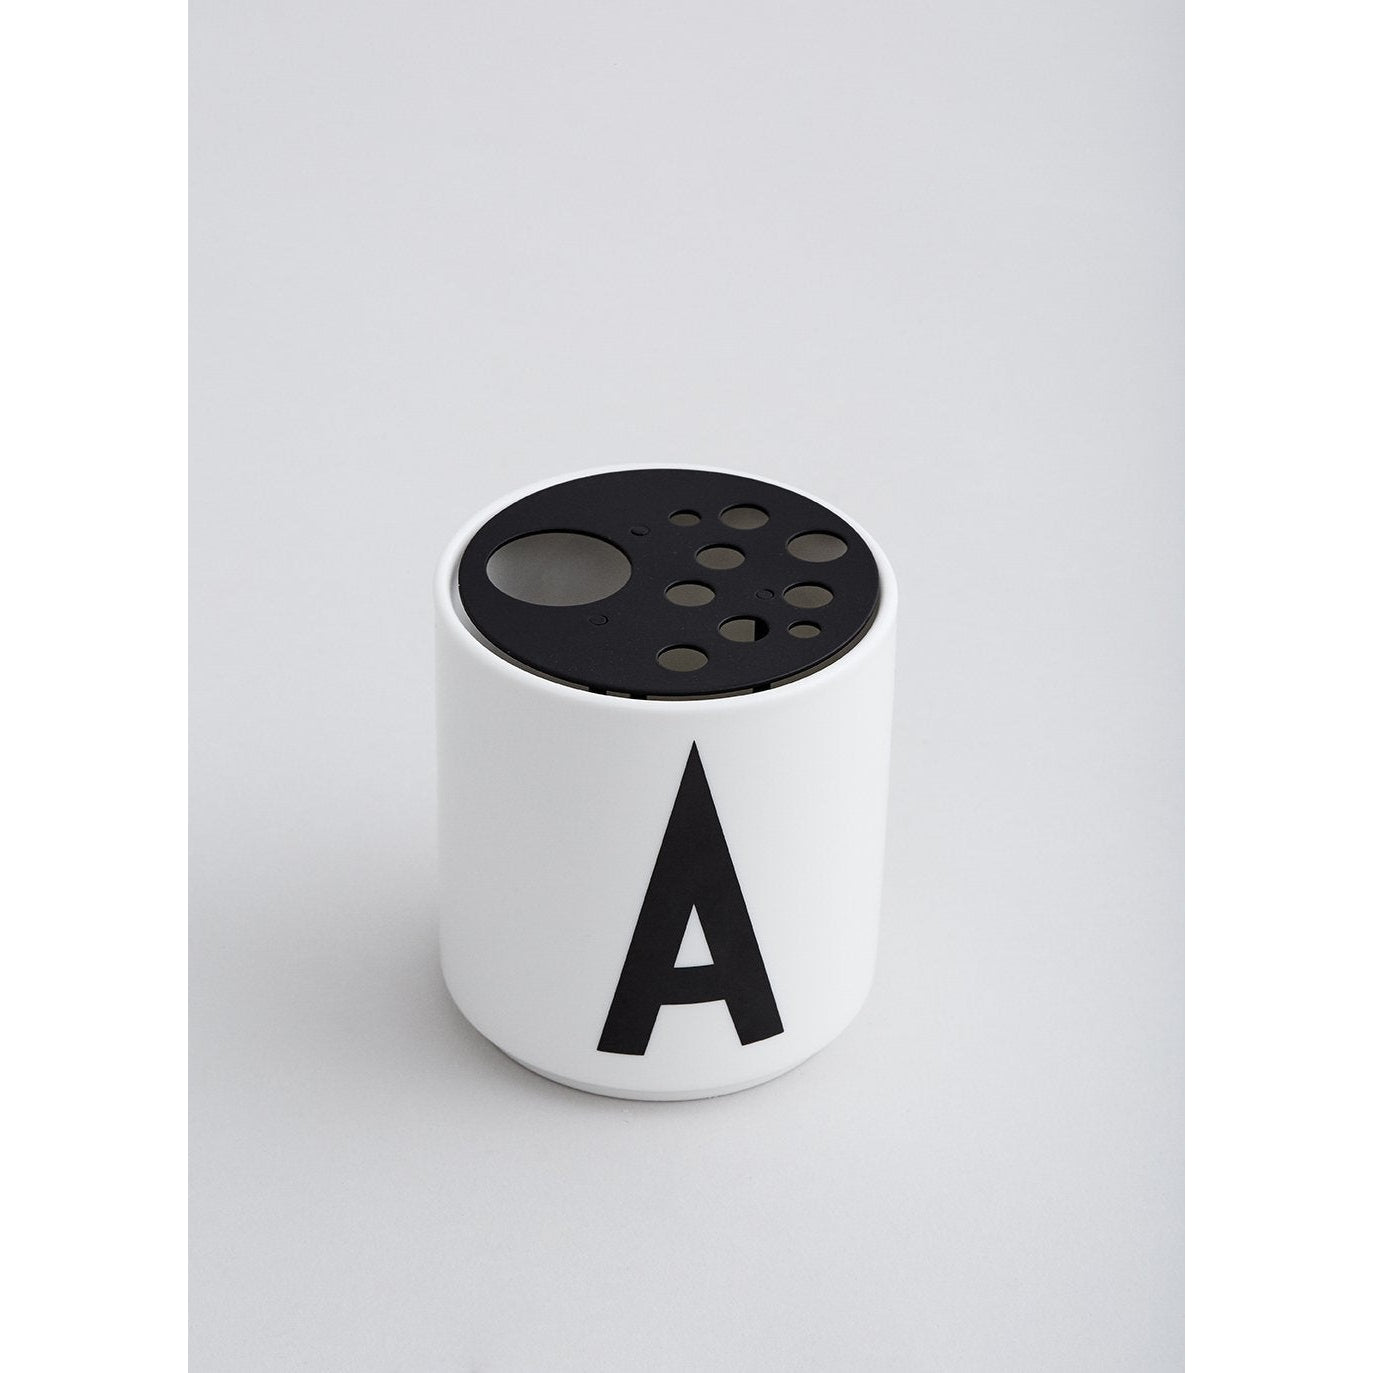 Konstrukční písmena Flower udržuje vložení pro poháry ABC